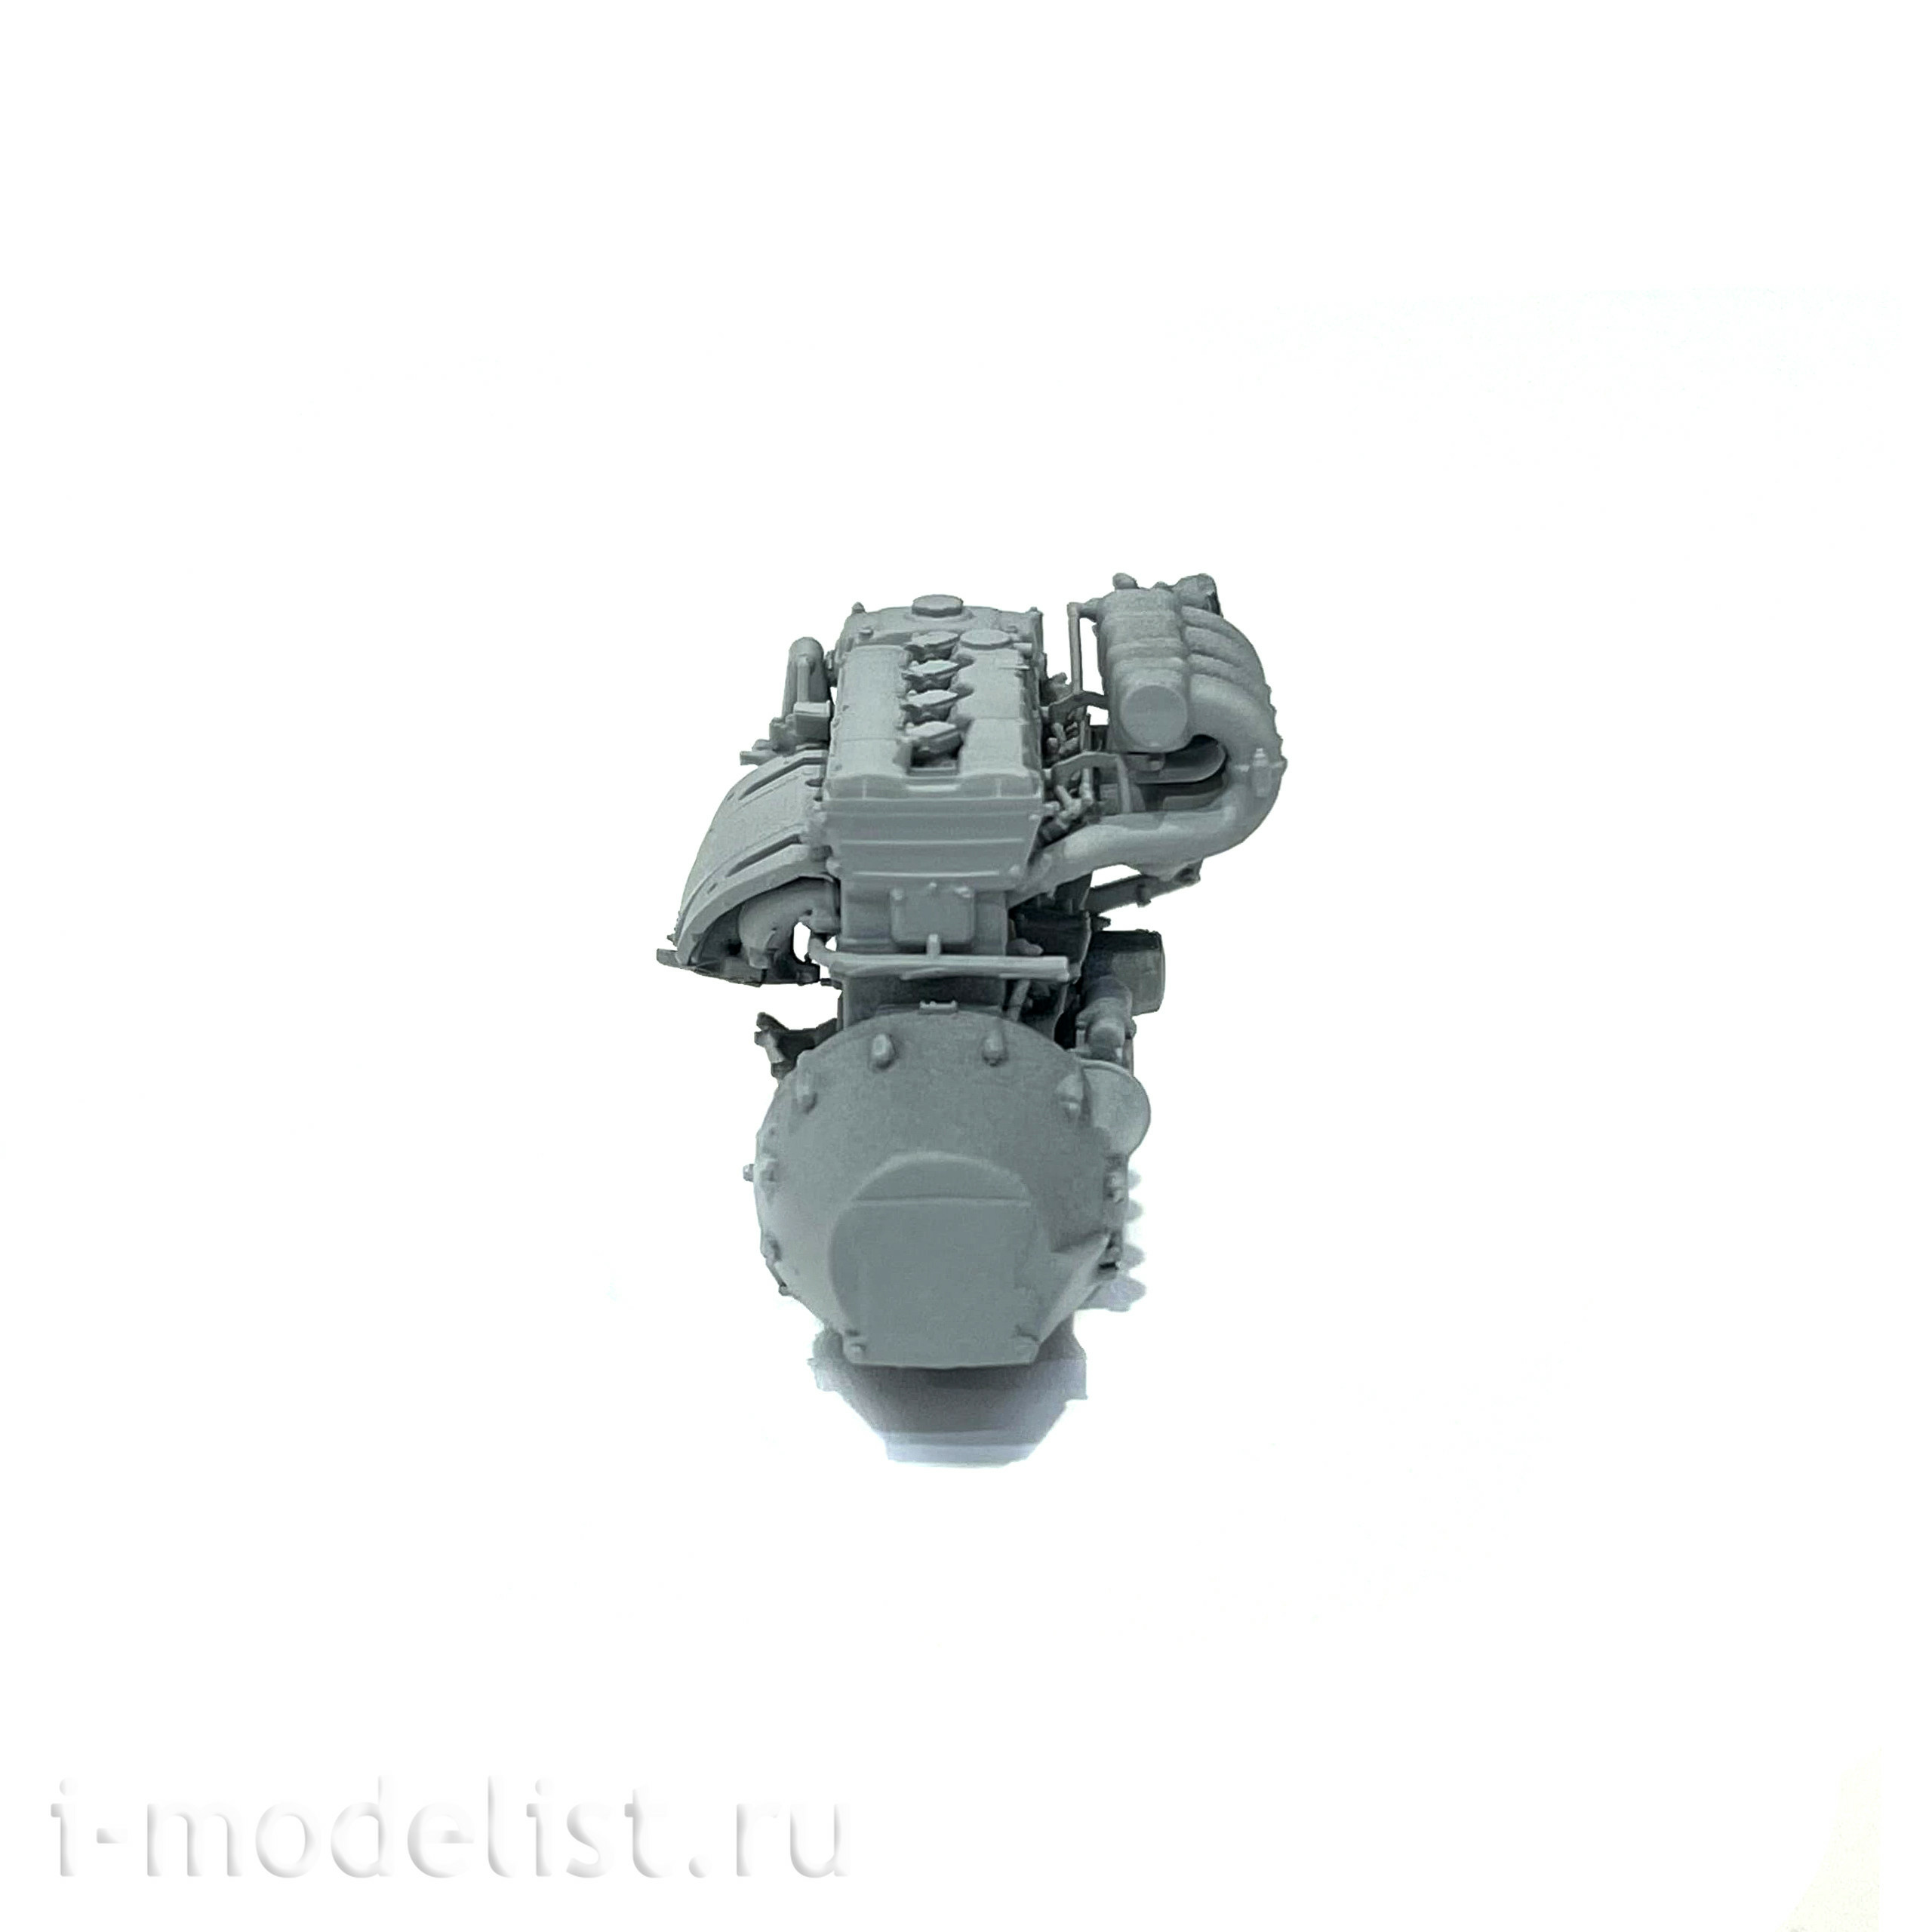 Im35056 Imodelist 1/35 ZMZ-409 Engine for 